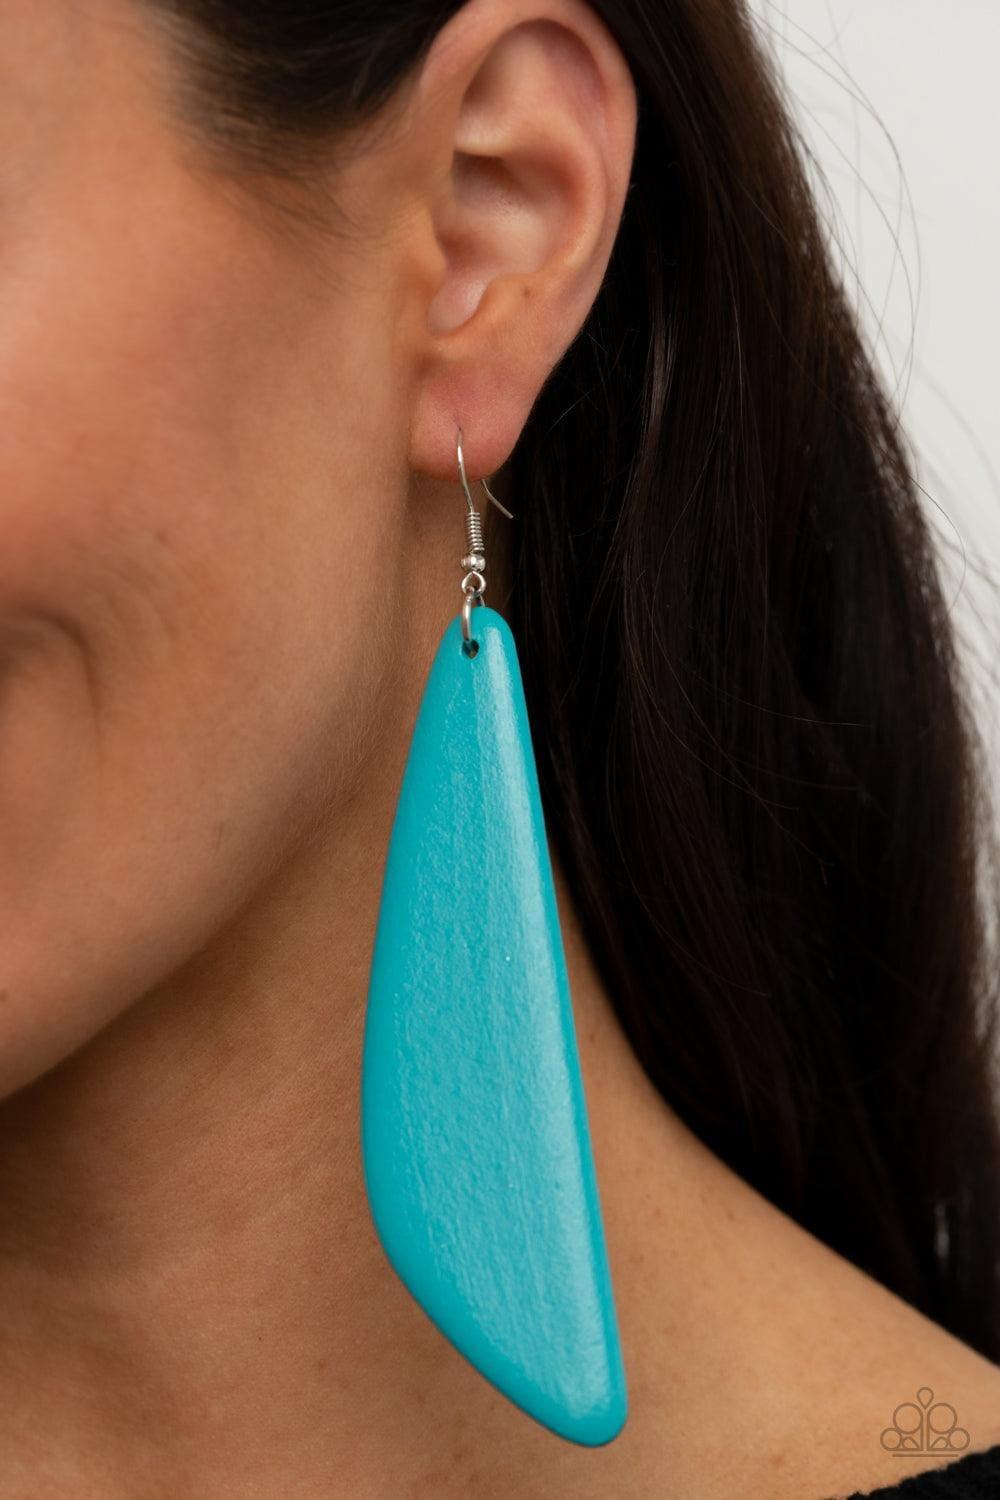 Paparazzi Accessories - Scuba Dream - Blue Earrings - Bling by JessieK